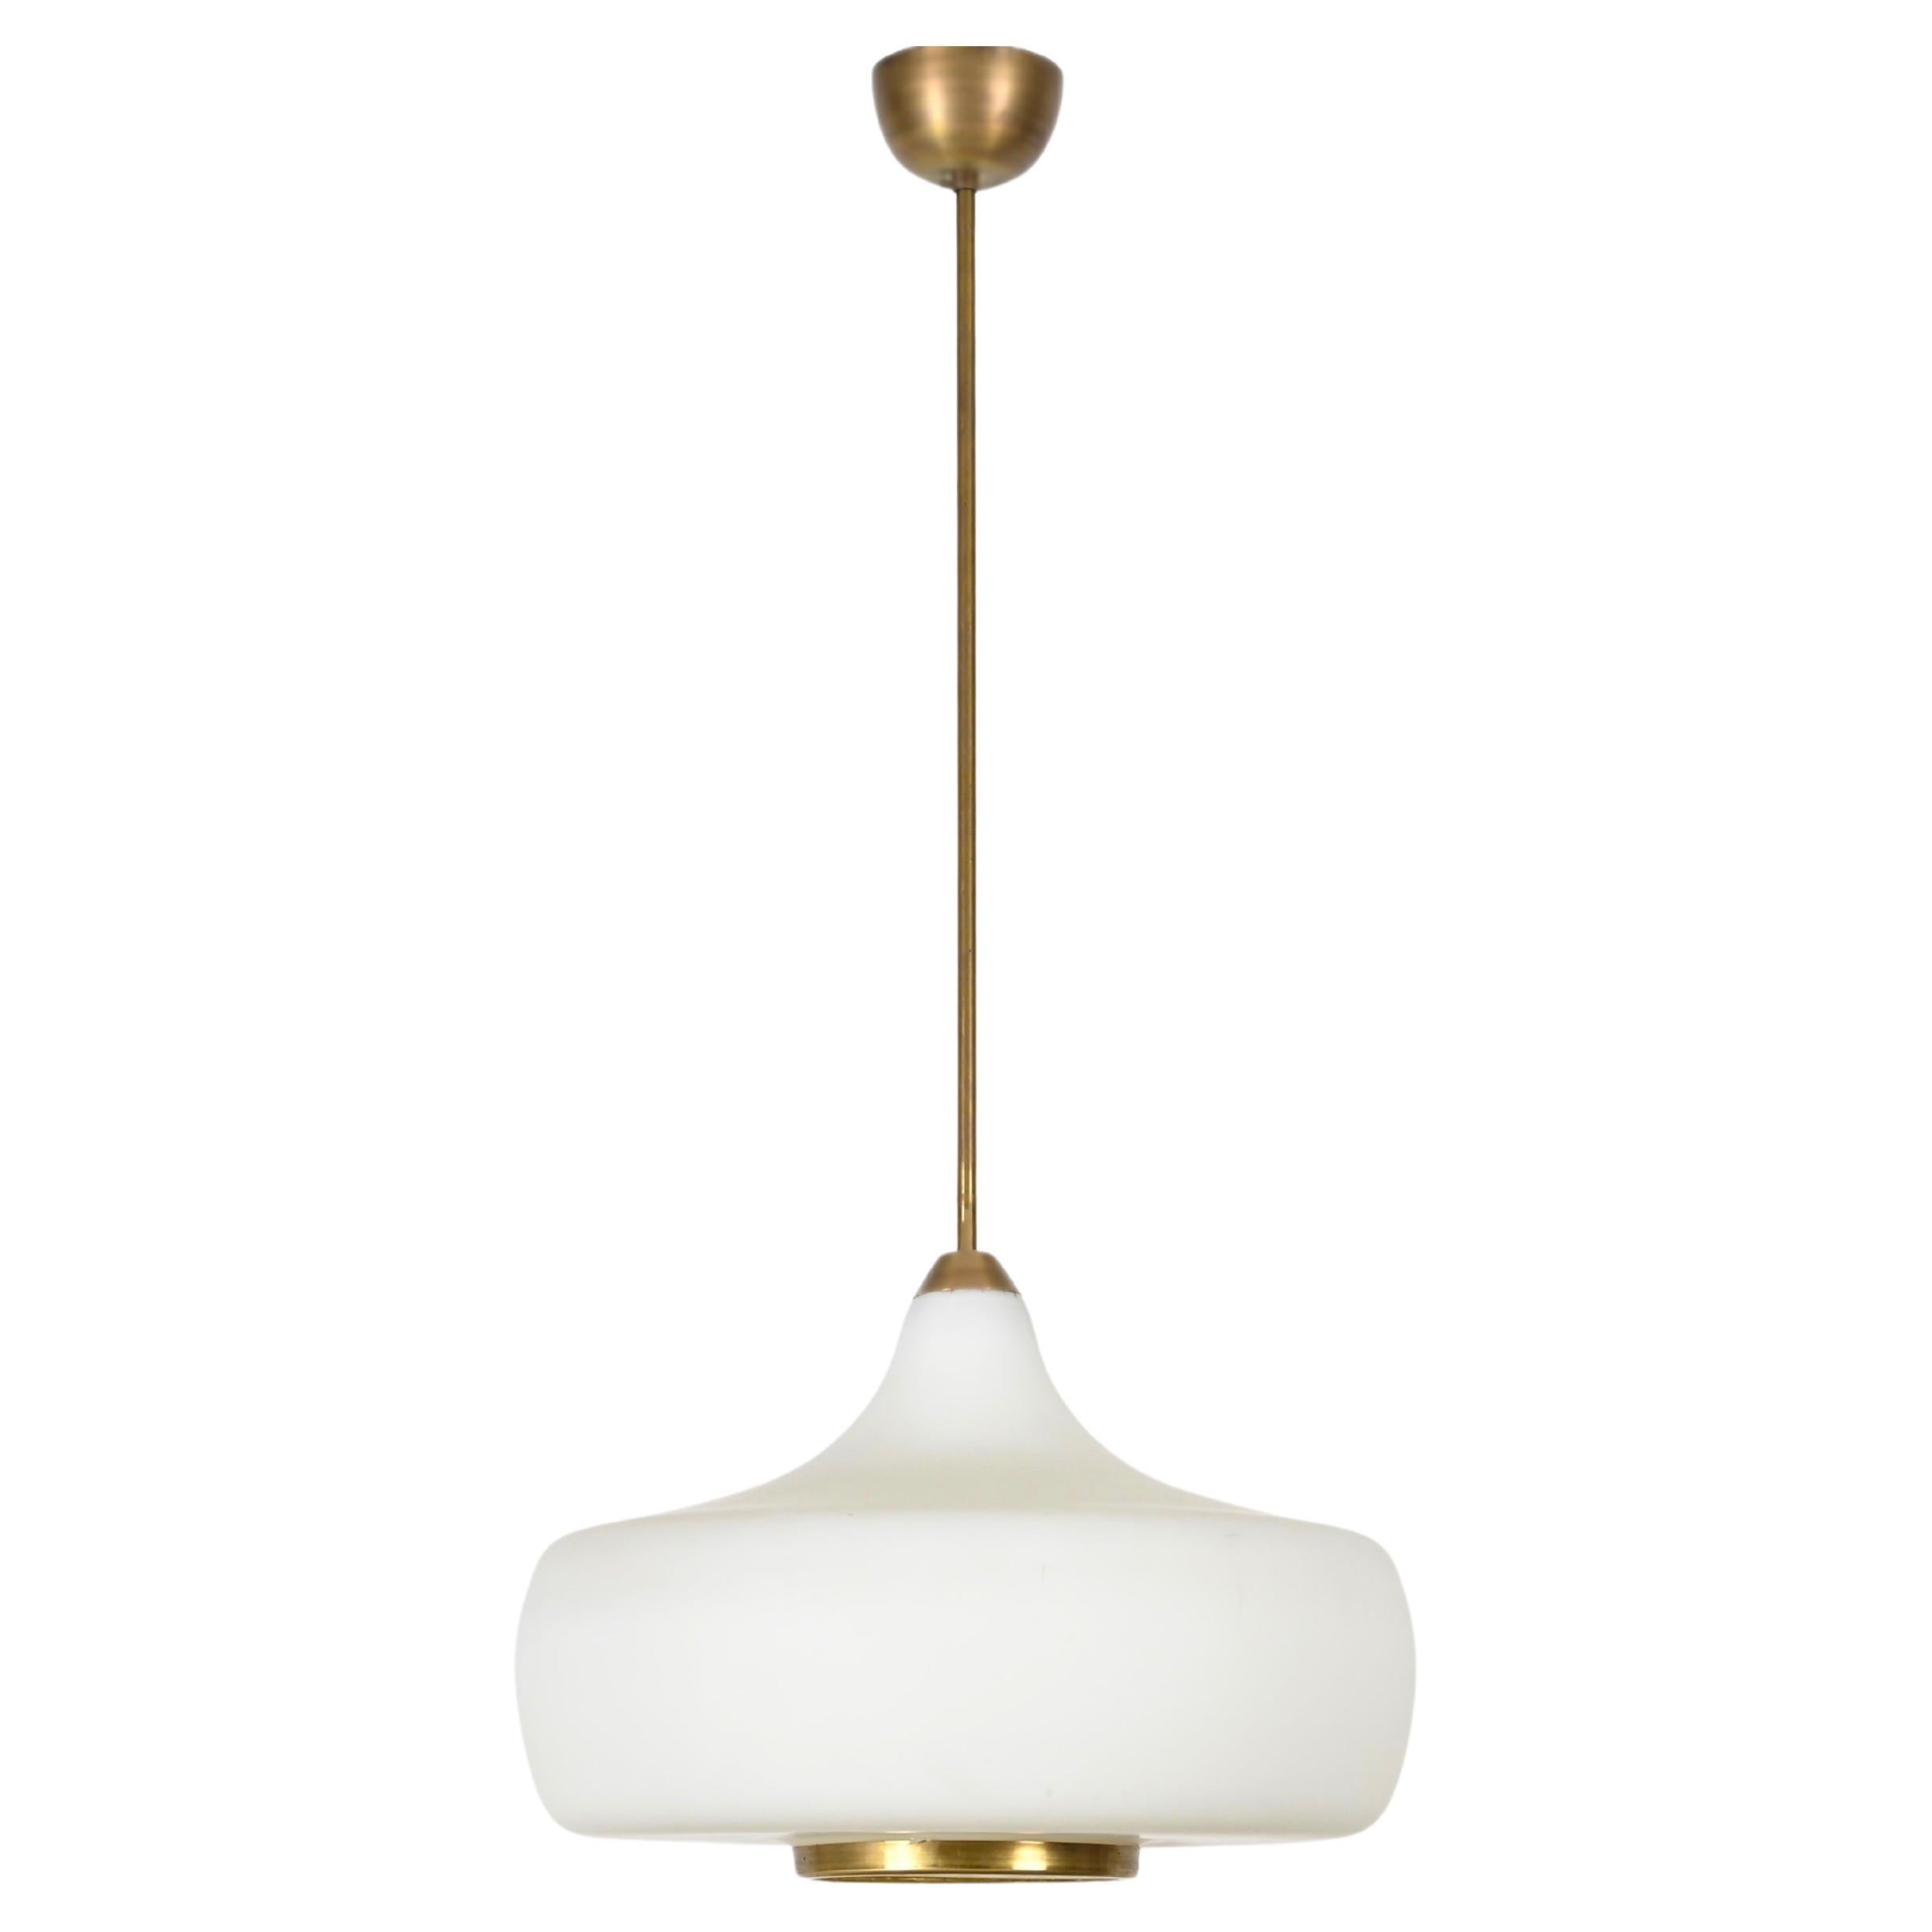 Stilnovo Opal Glass and Brass Chandelier Ceiling Lamp, Italian Lighting 1960s For Sale